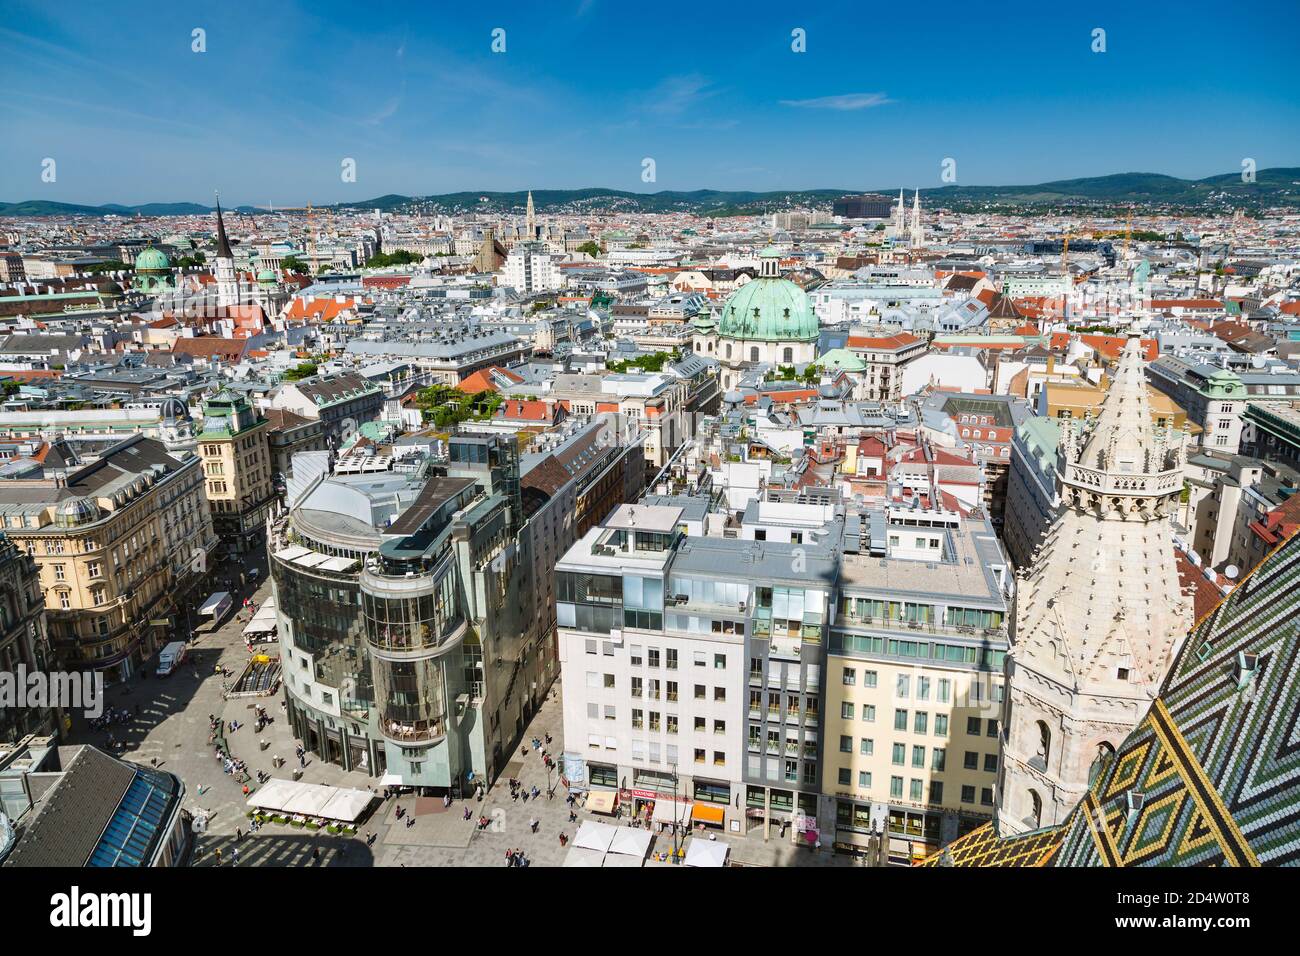 VIENNE - MAI 7 : vue sur la ville de Vienne sur la rue commerçante Graben avec de nombreuses églises en arrière-plan, Autriche le 7 mai 2018 Banque D'Images